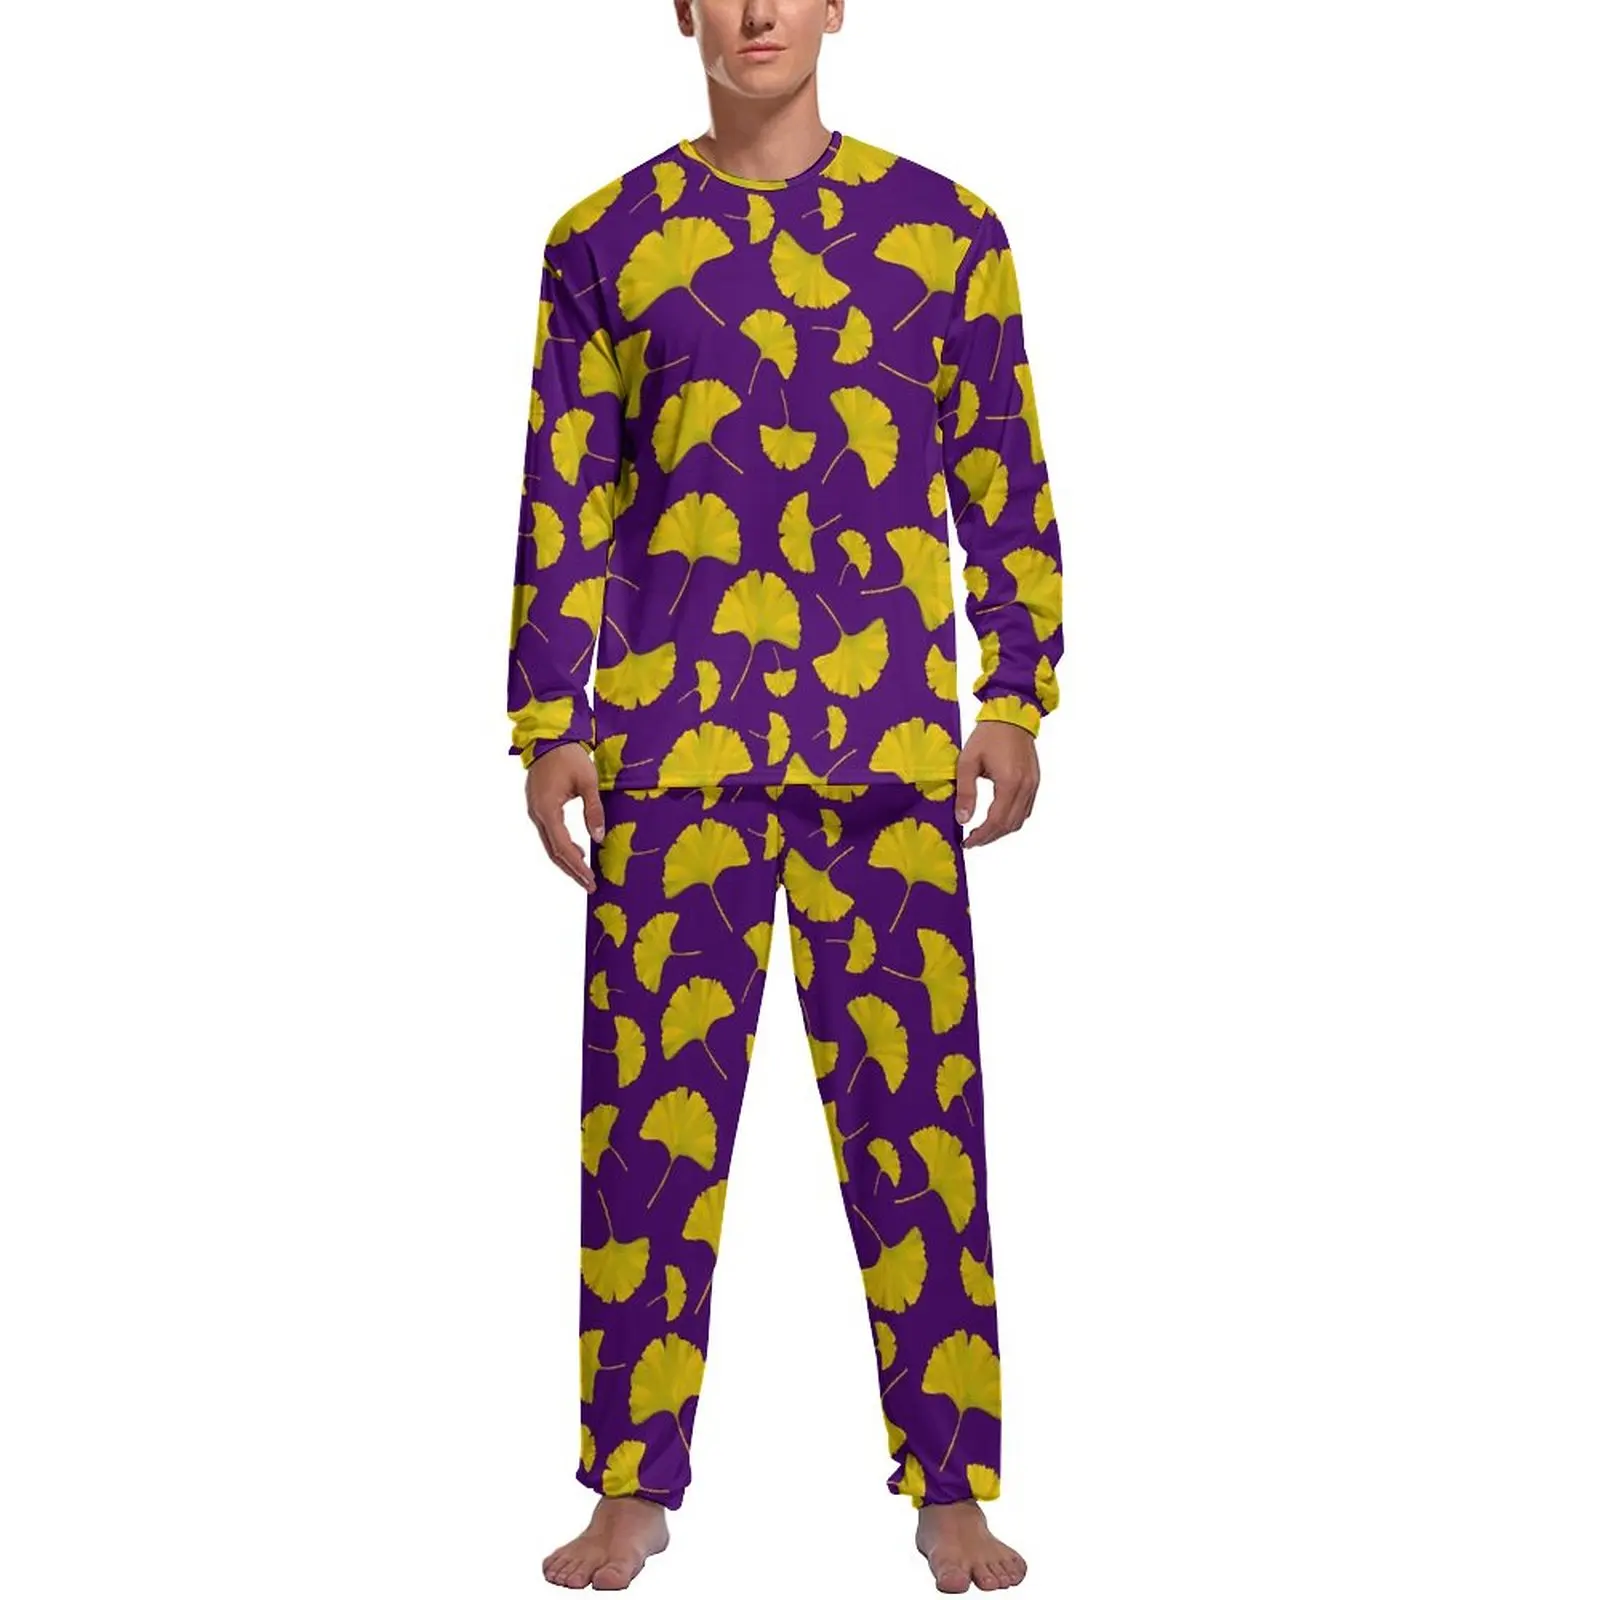 

Пижама Ginkgo Biloba мужская с принтом, милый пижамный комплект с длинным рукавом, повседневная весенняя одежда для сна на заказ, подарок, 2 предмета